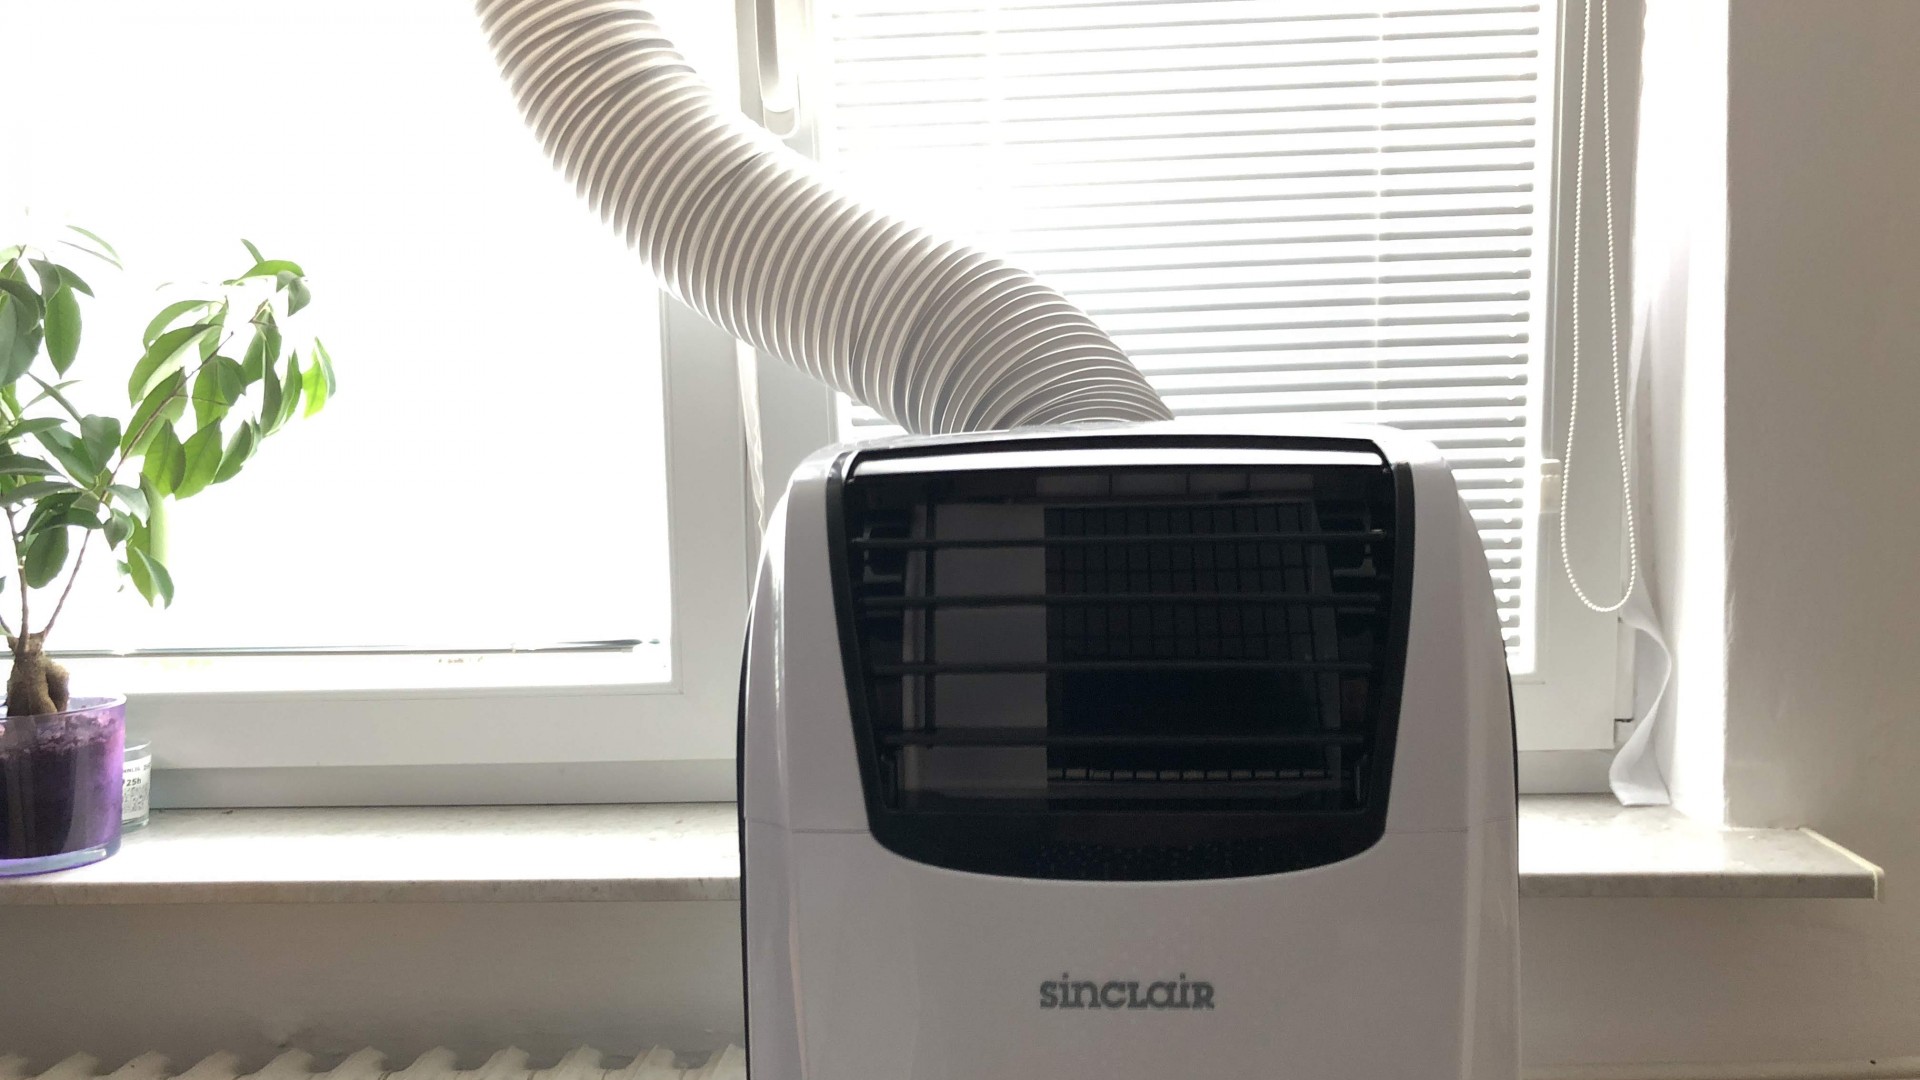 Recenze mobilní klimatizace Sinclair AMC-14AN1 a poznatky o přenosných klimatizacích obecně